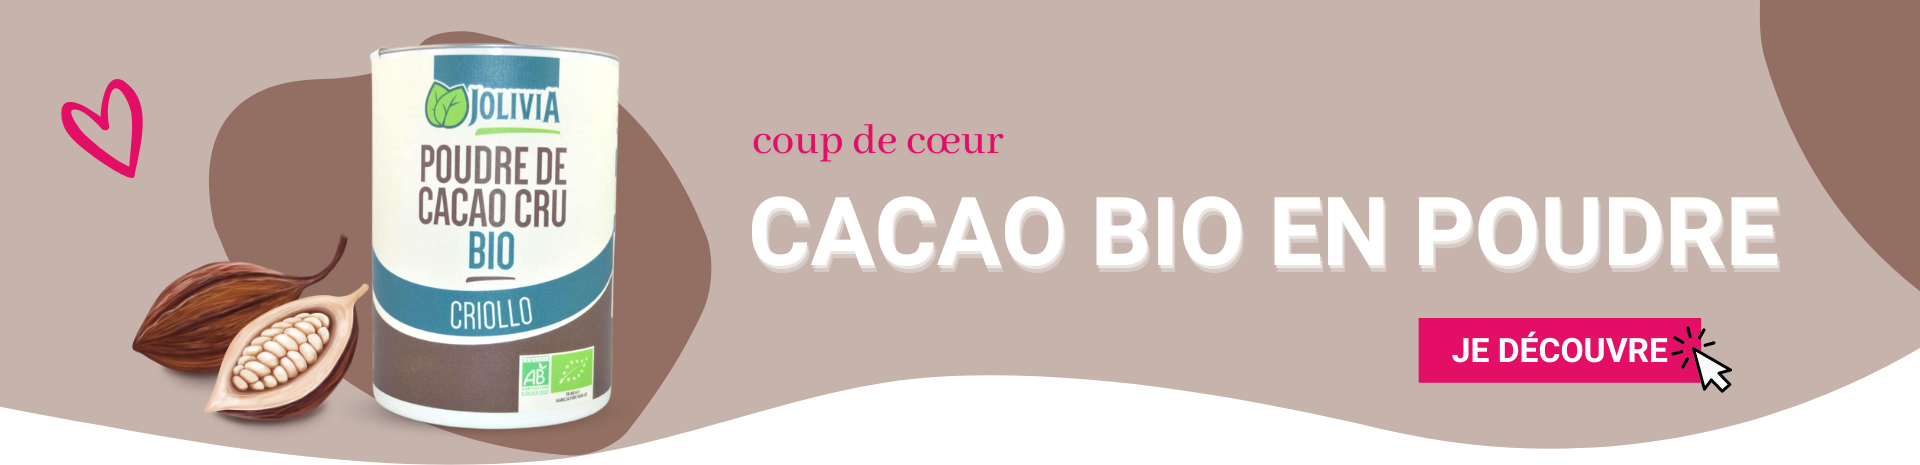 Cacao Bio poudre Jolivia